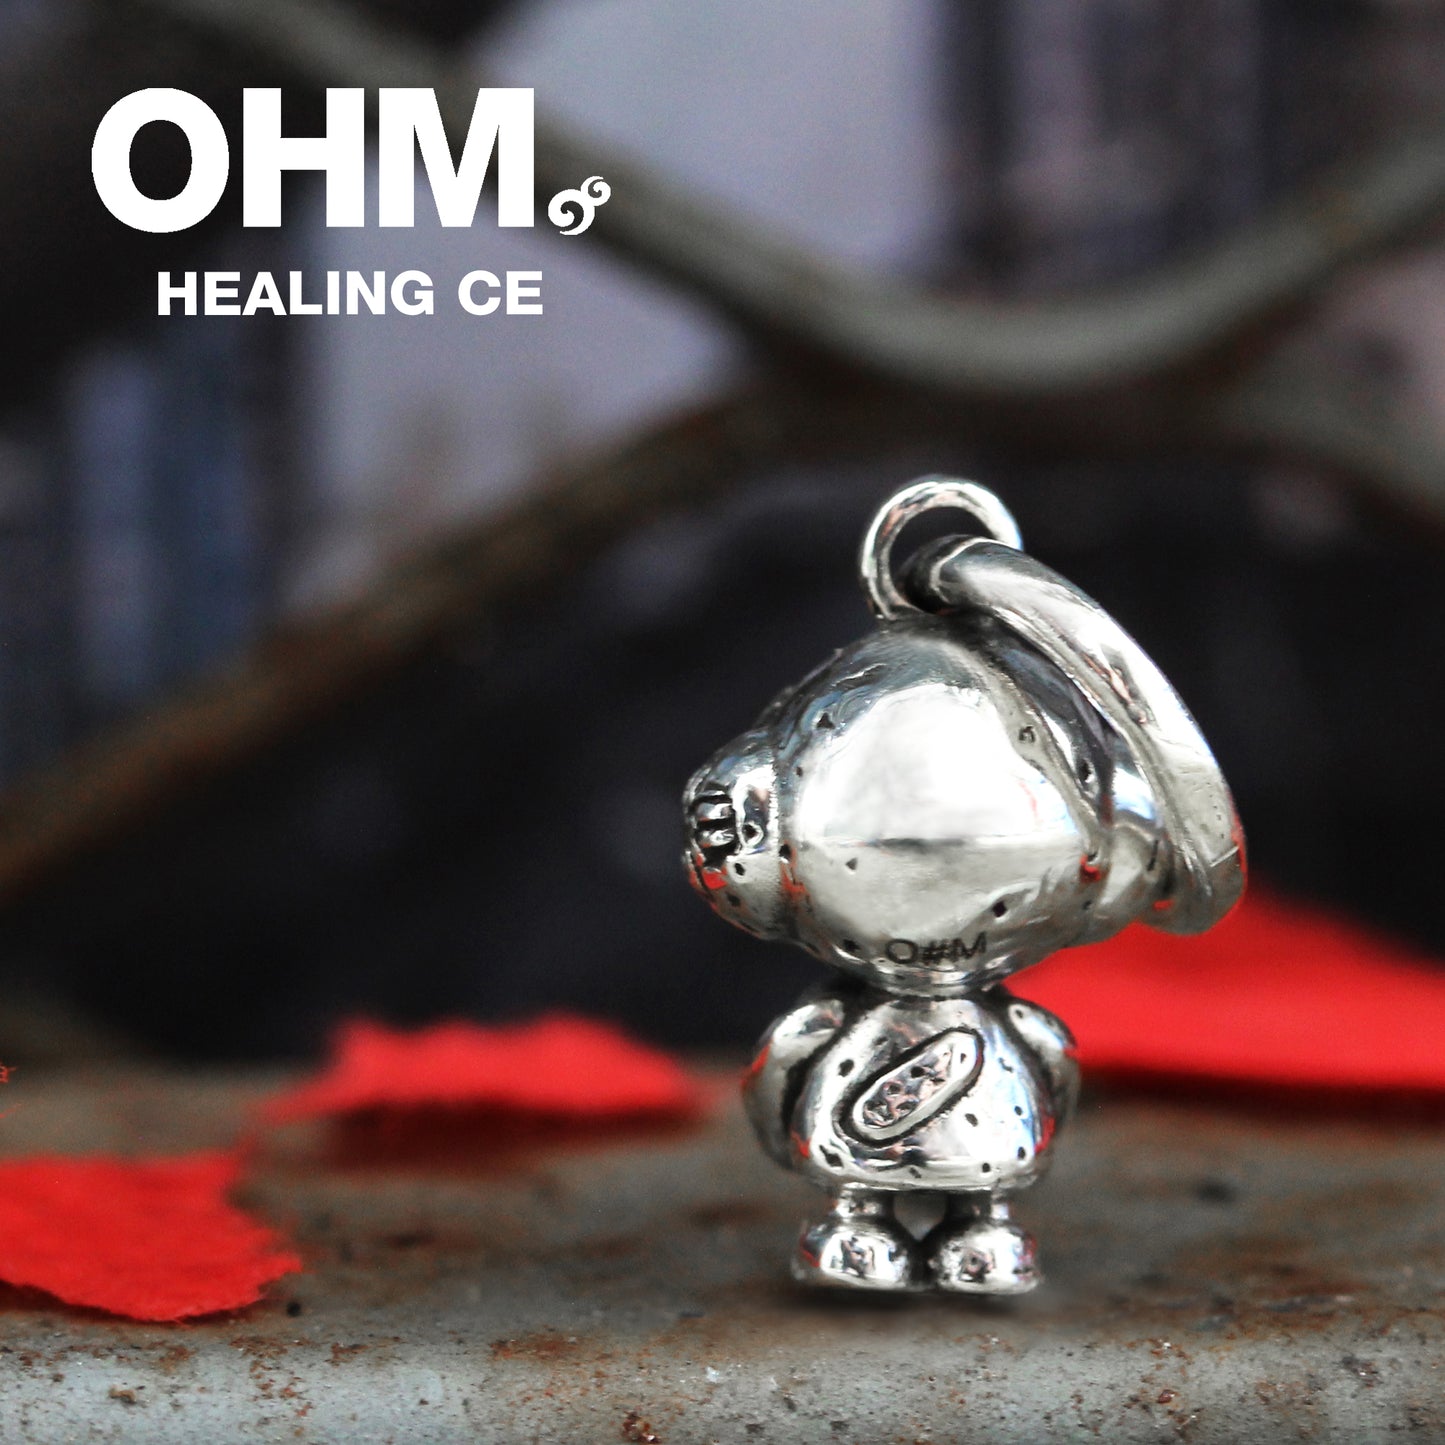 Healing CE